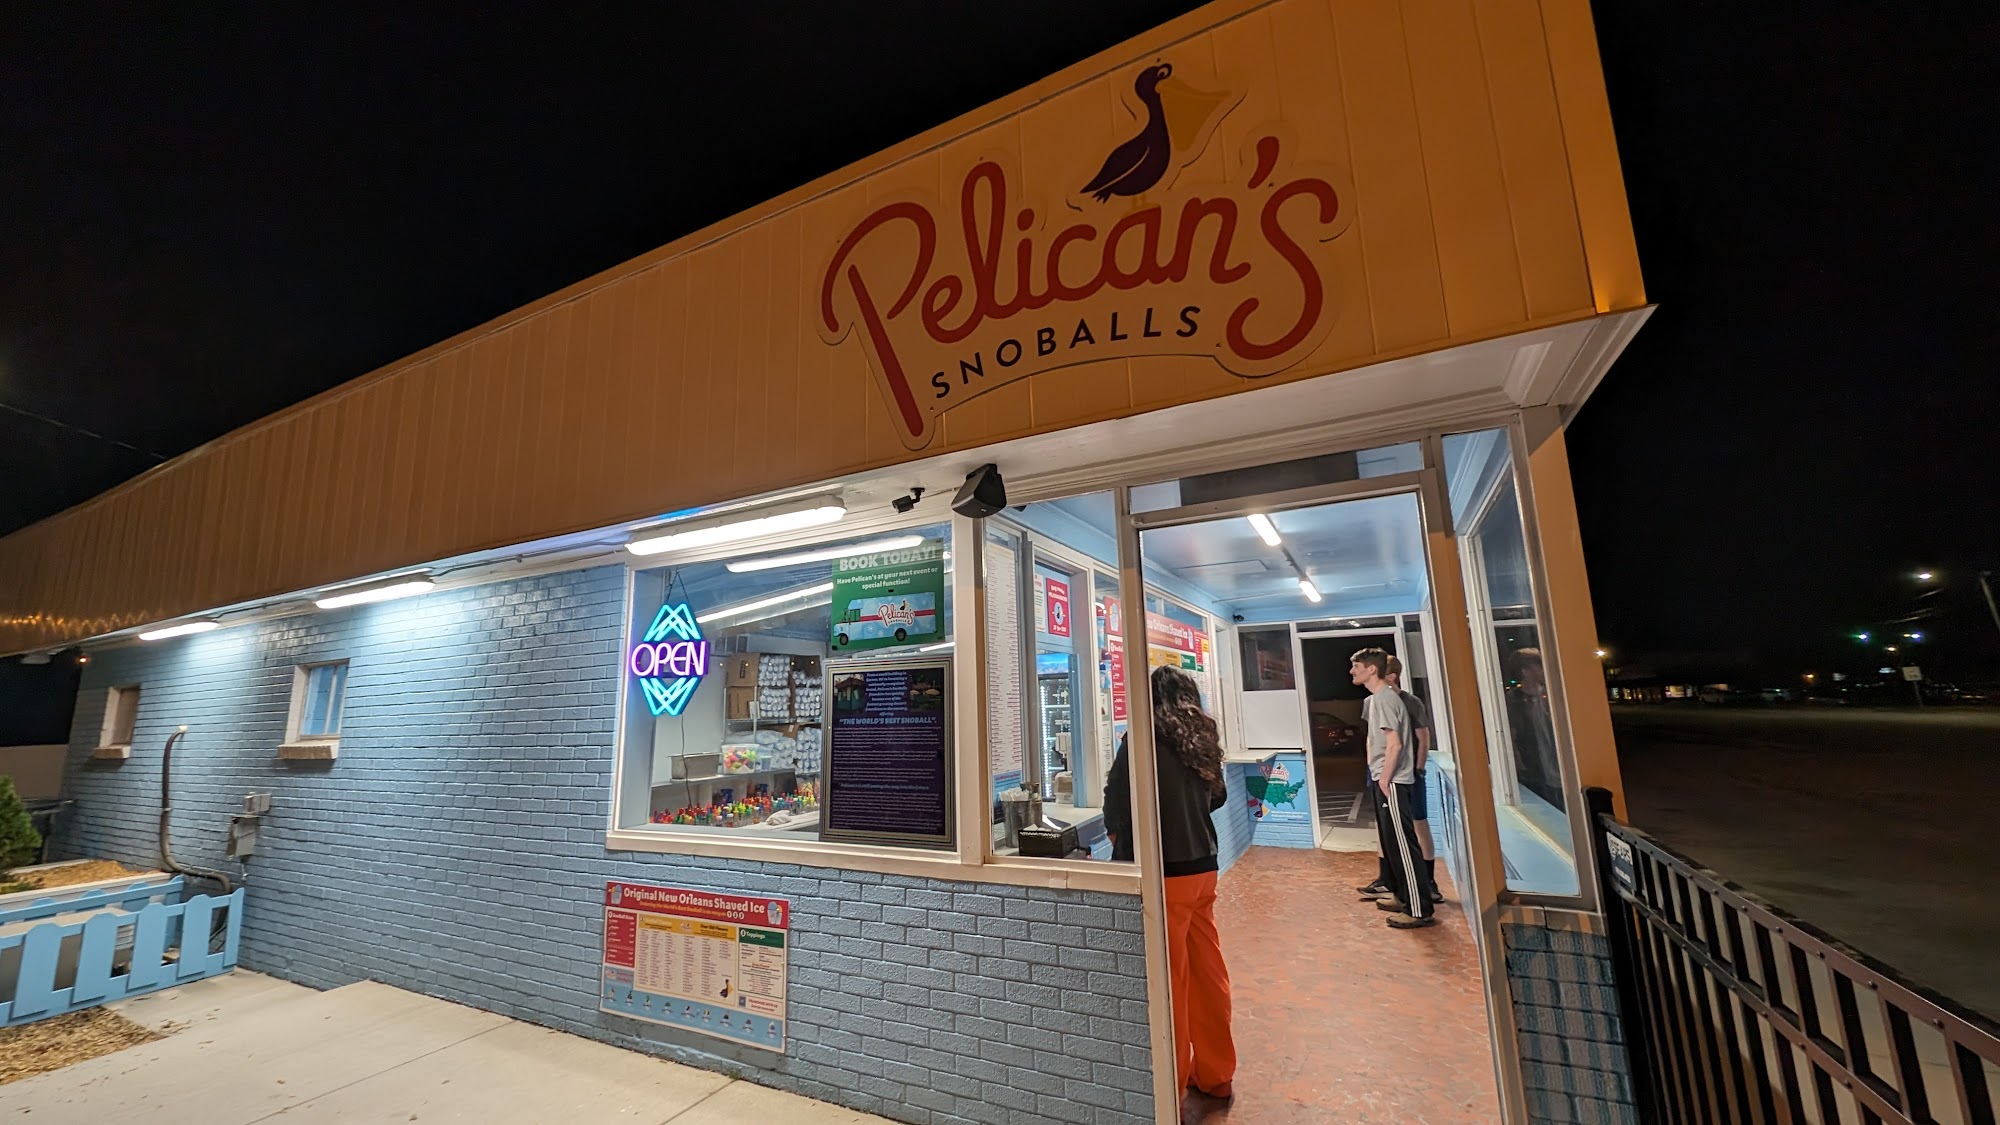 Pelican’s Snoballs